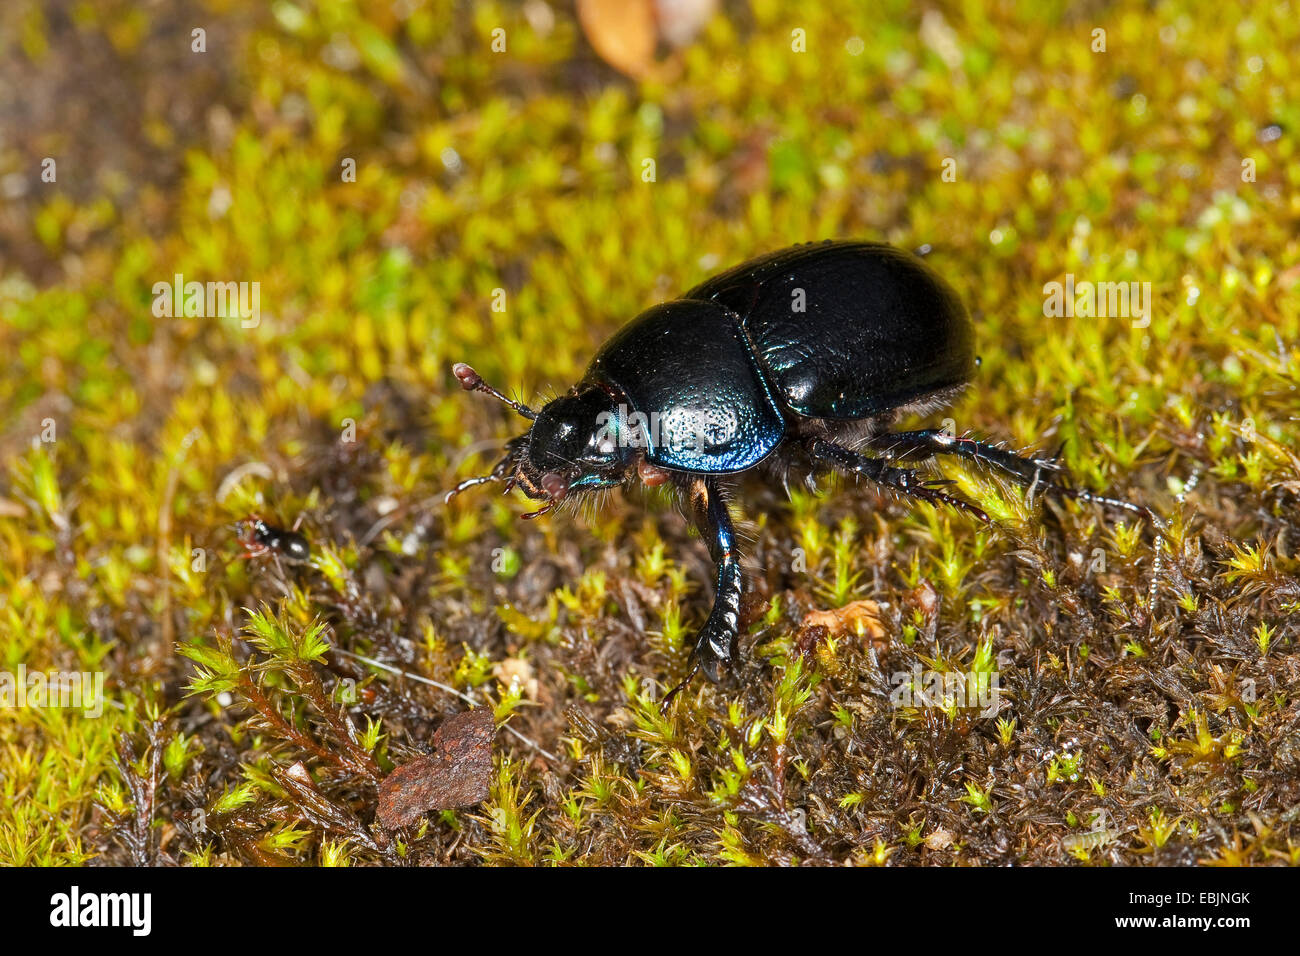 Dor común escarabajo (Anoplotrupes stercorosus, Geotrupes stercorosus), sentarse en el musgo, Alemania Foto de stock